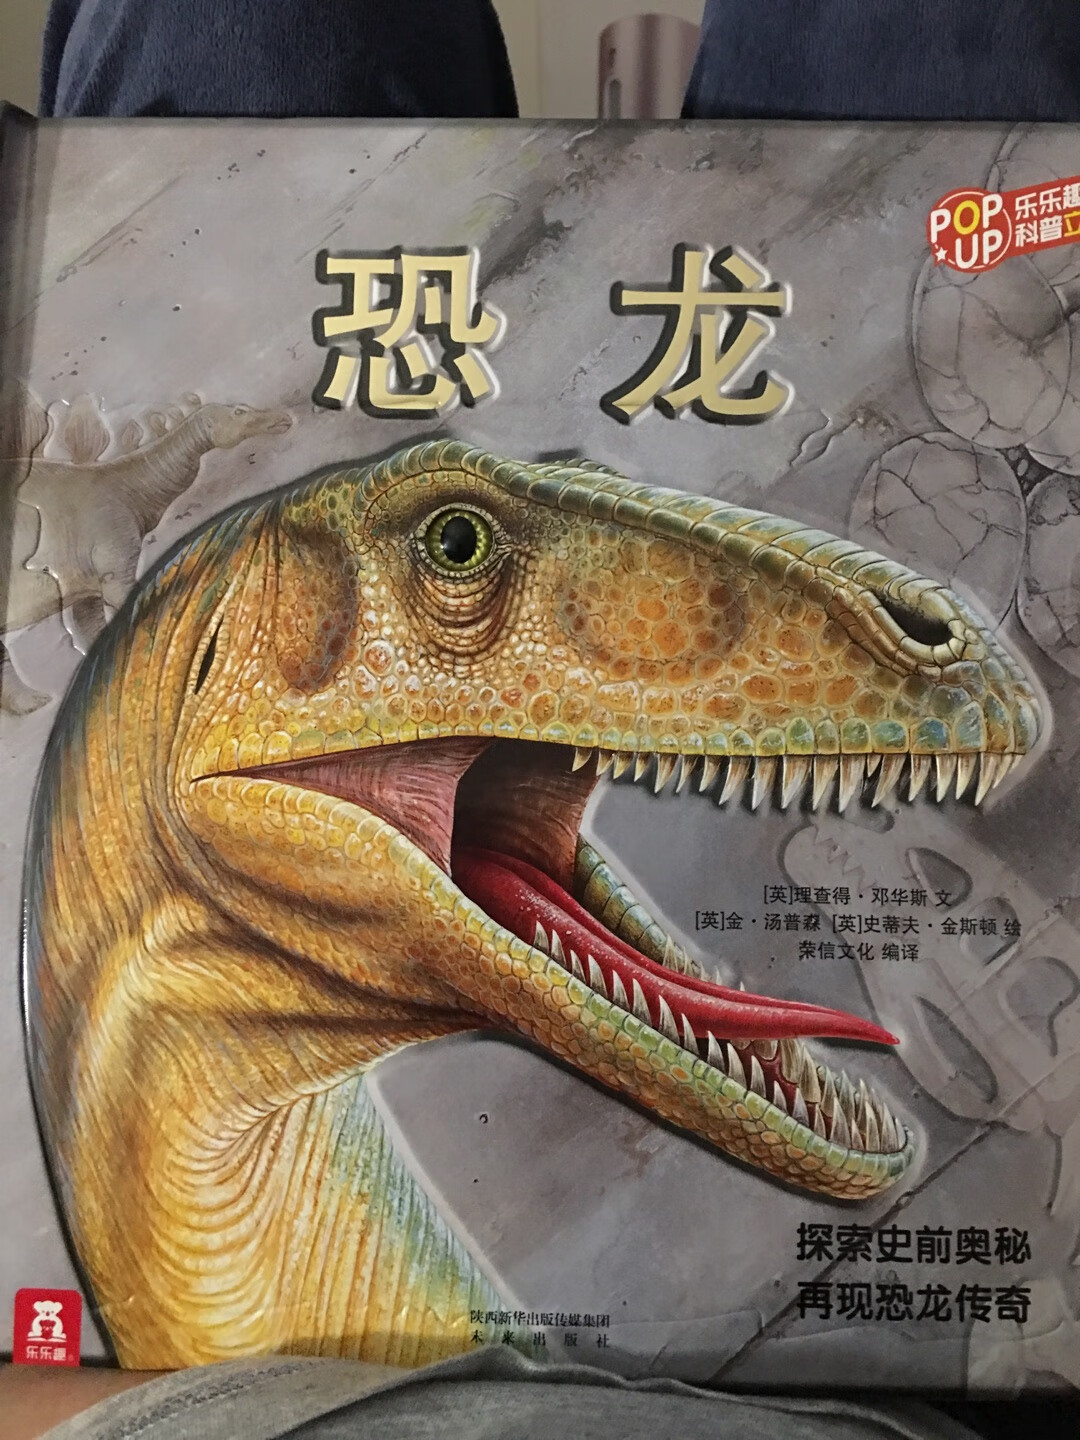 给儿子买的，他还小看不懂不过挺好的立体的书都是国外的创意，我也很爱恐龙